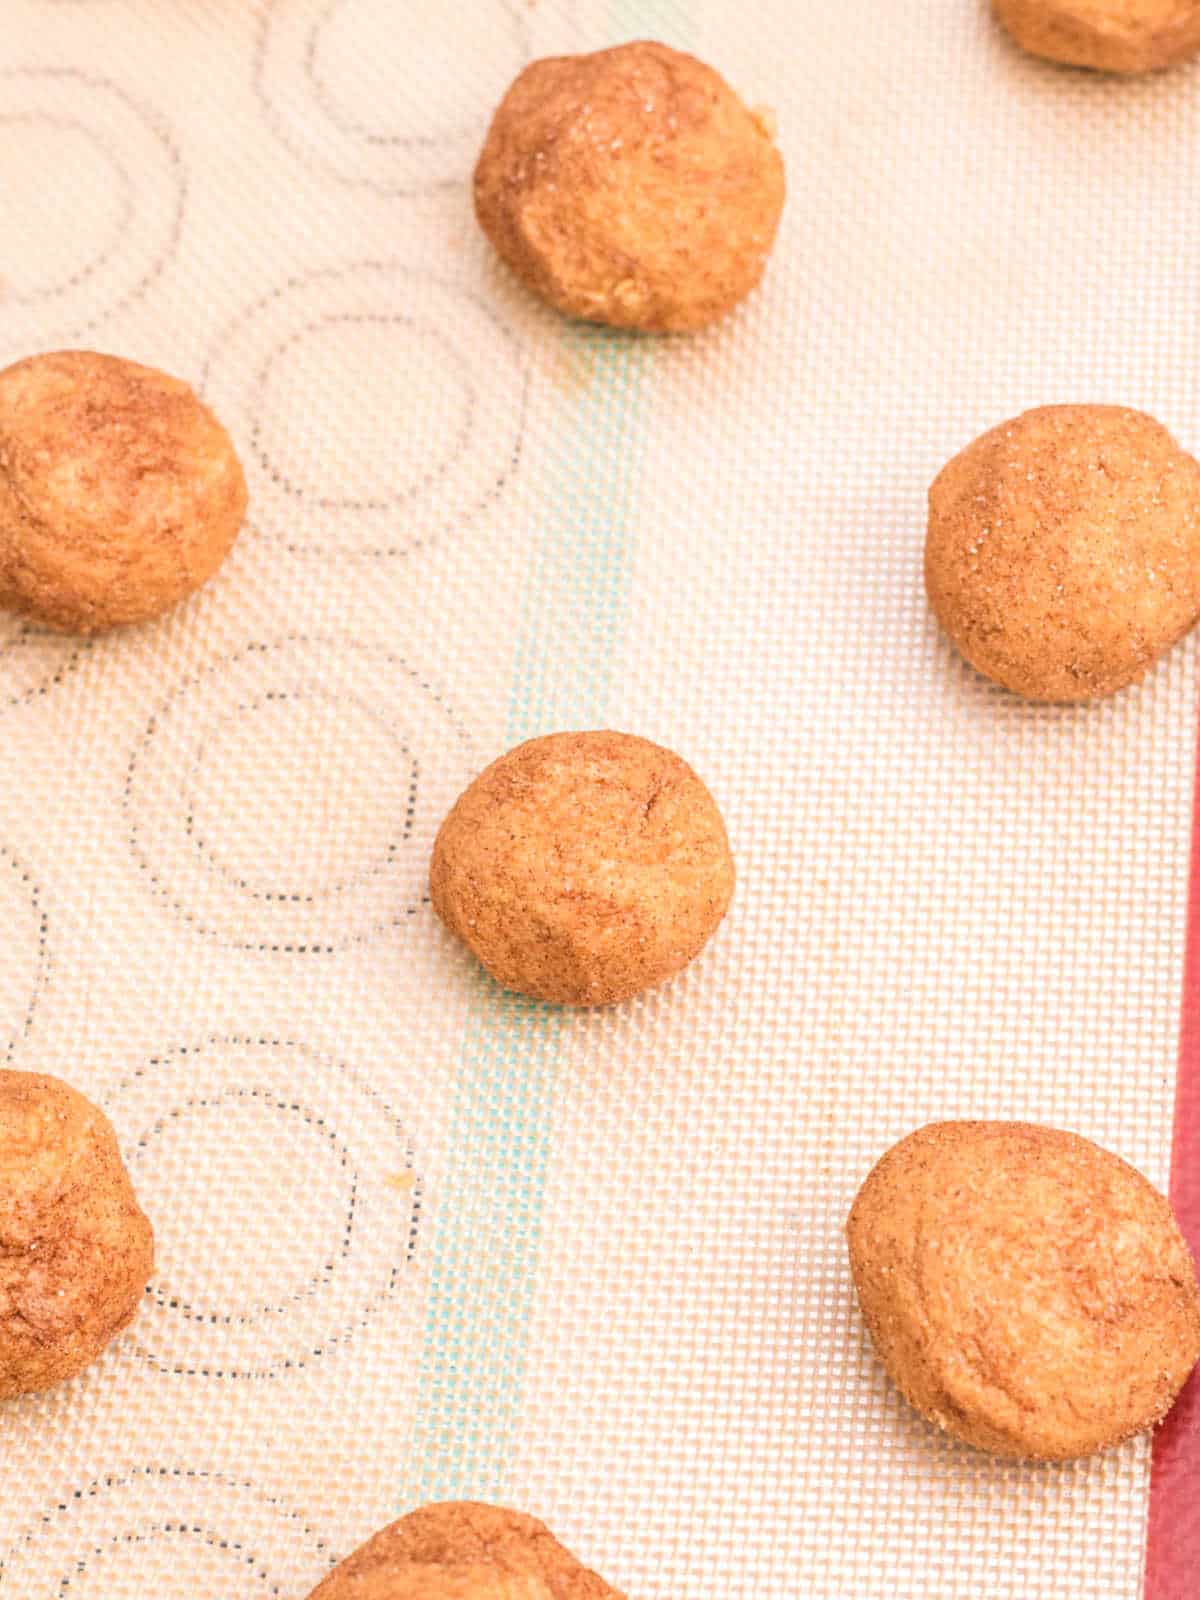 Silpat mat with unbaked pumpkin cookie dough balls.